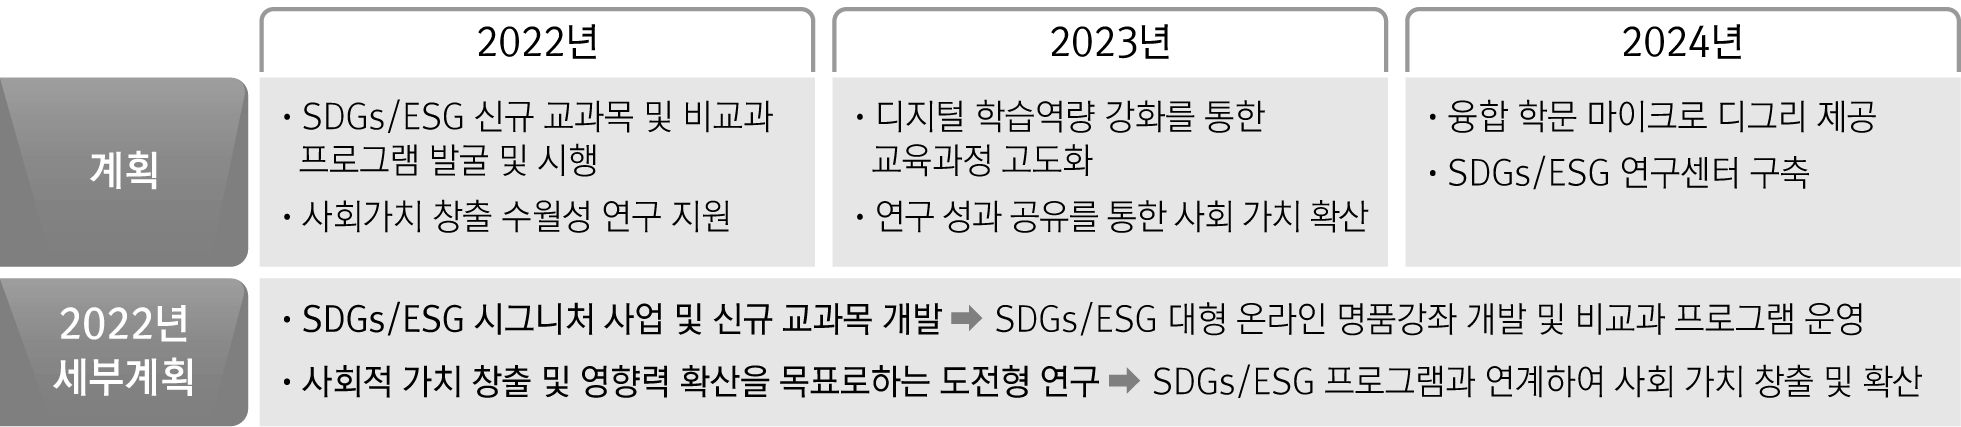 2022년 ~ 2024년 까지의 추진방향 및 내용